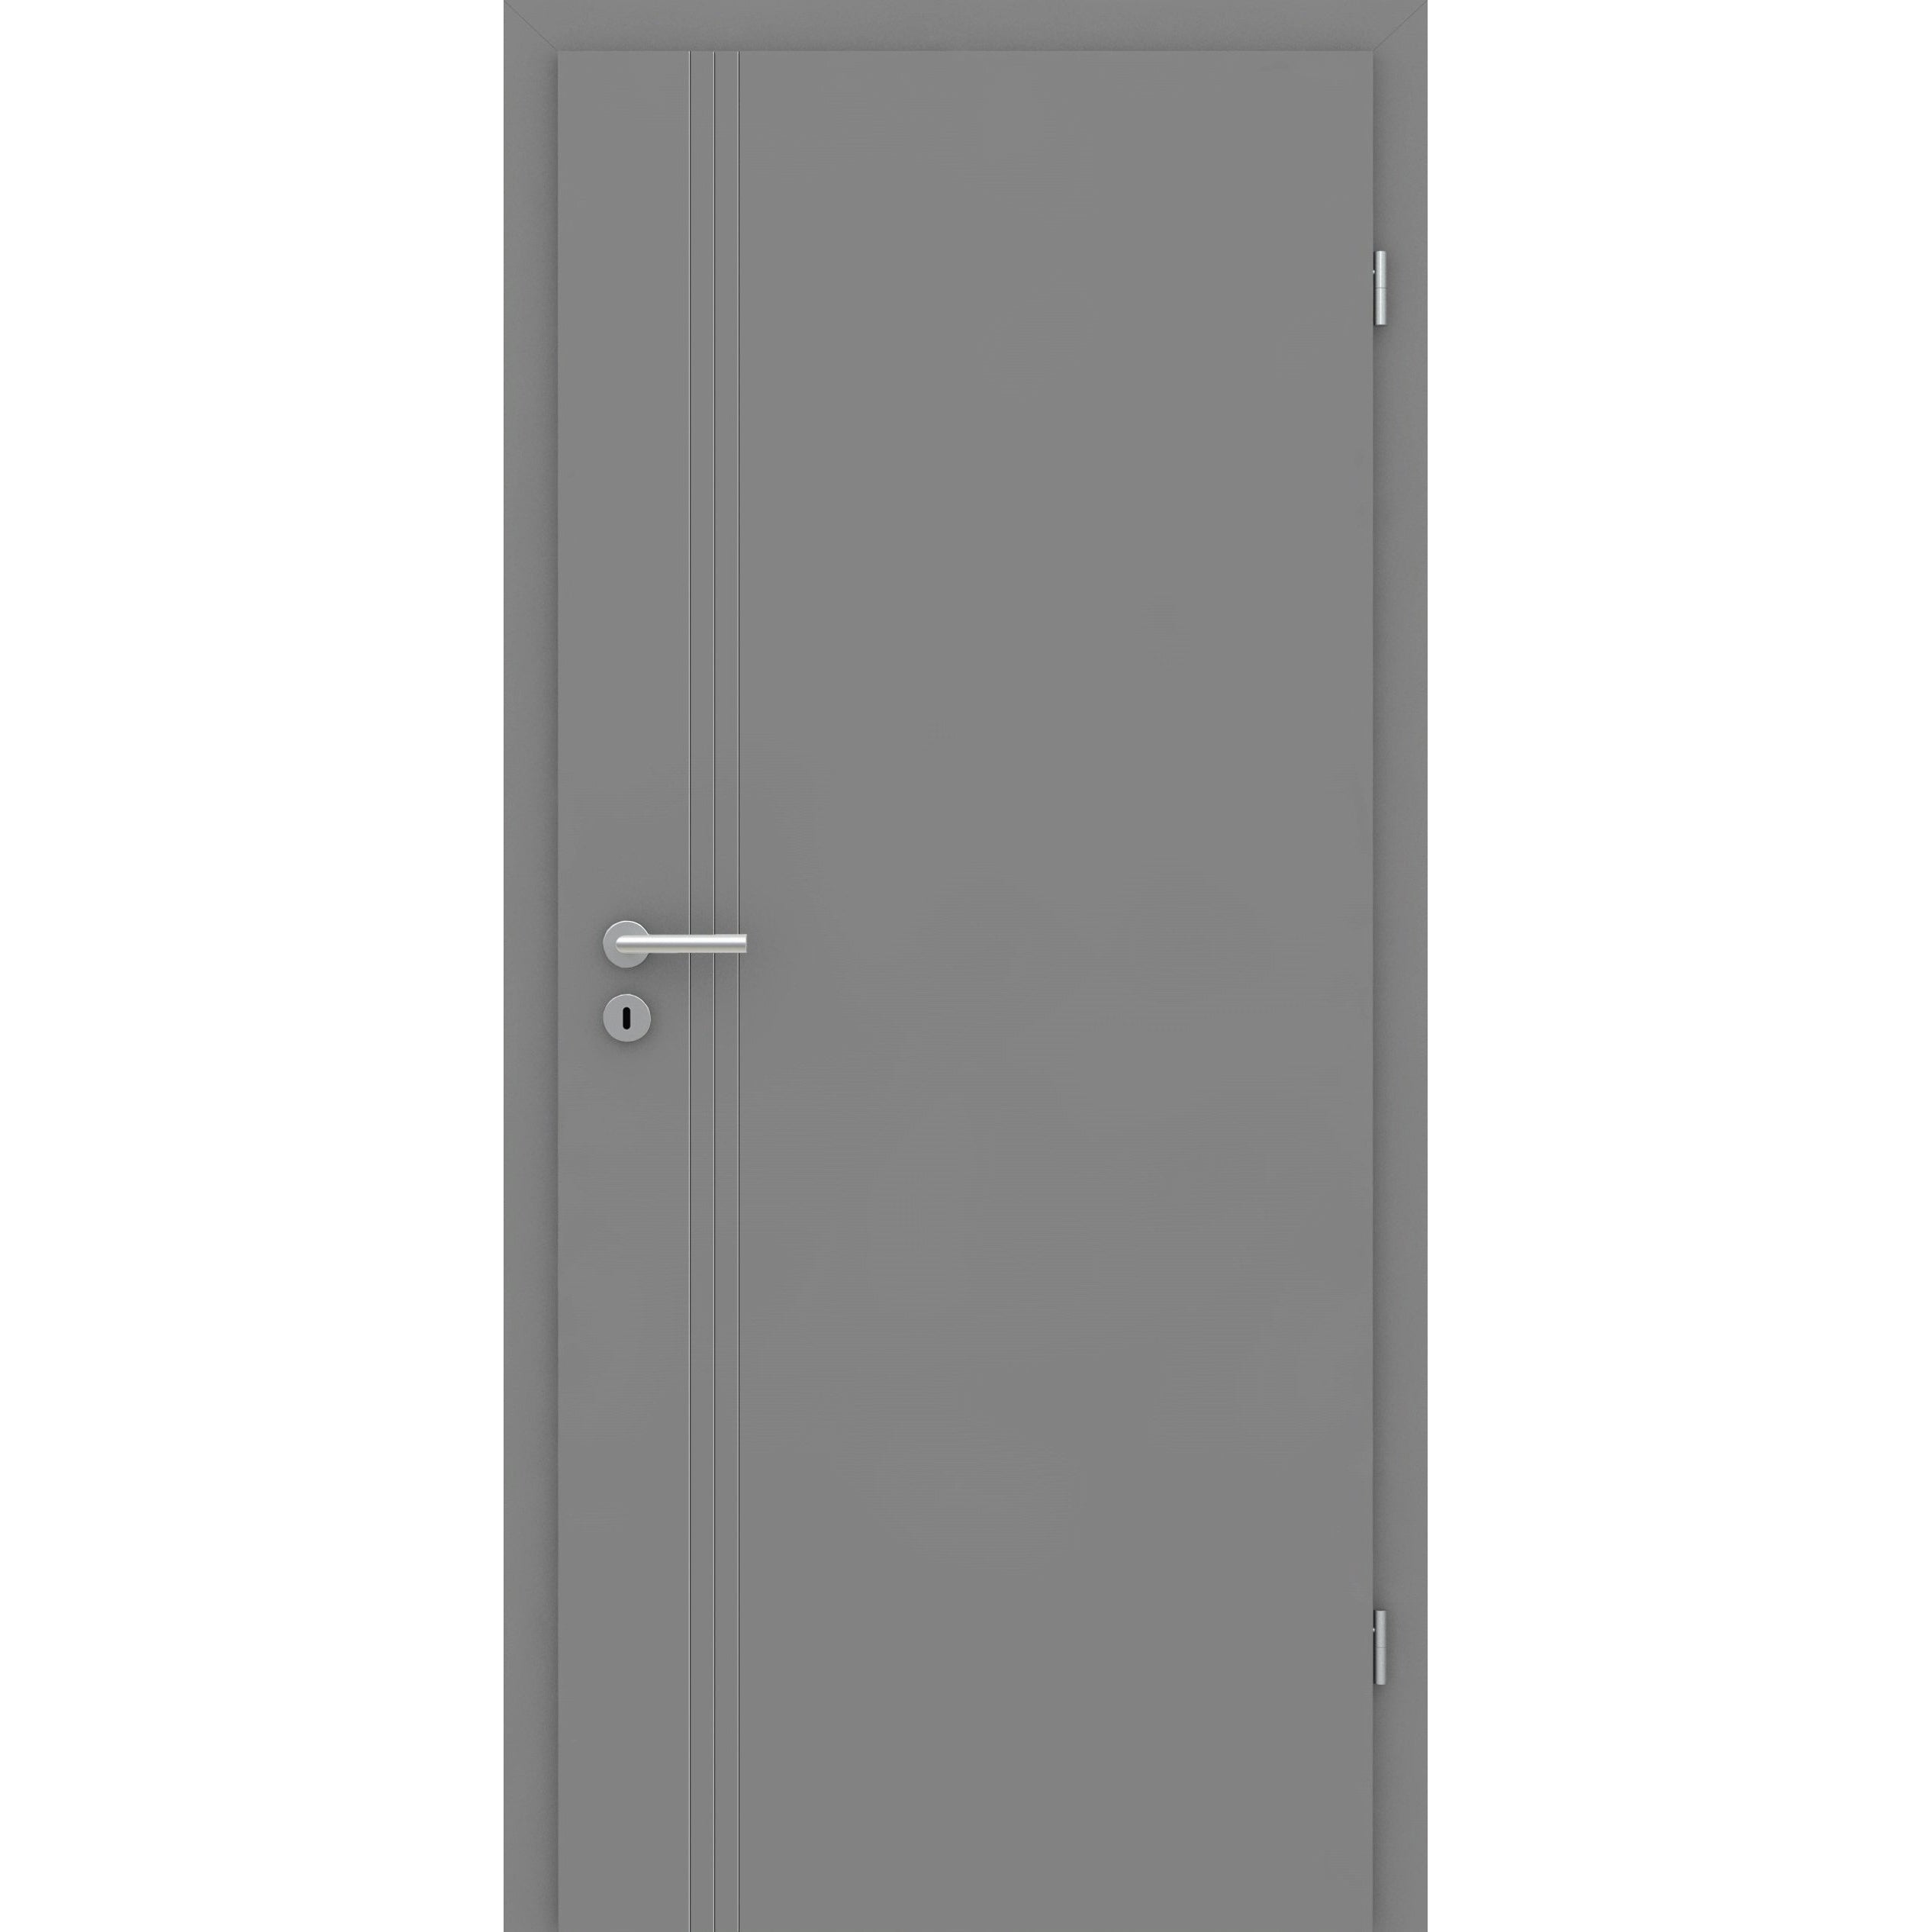 Zimmertür grau 3 Rillen aufrecht Schlosseite Designkante - Modell Designtür VS37